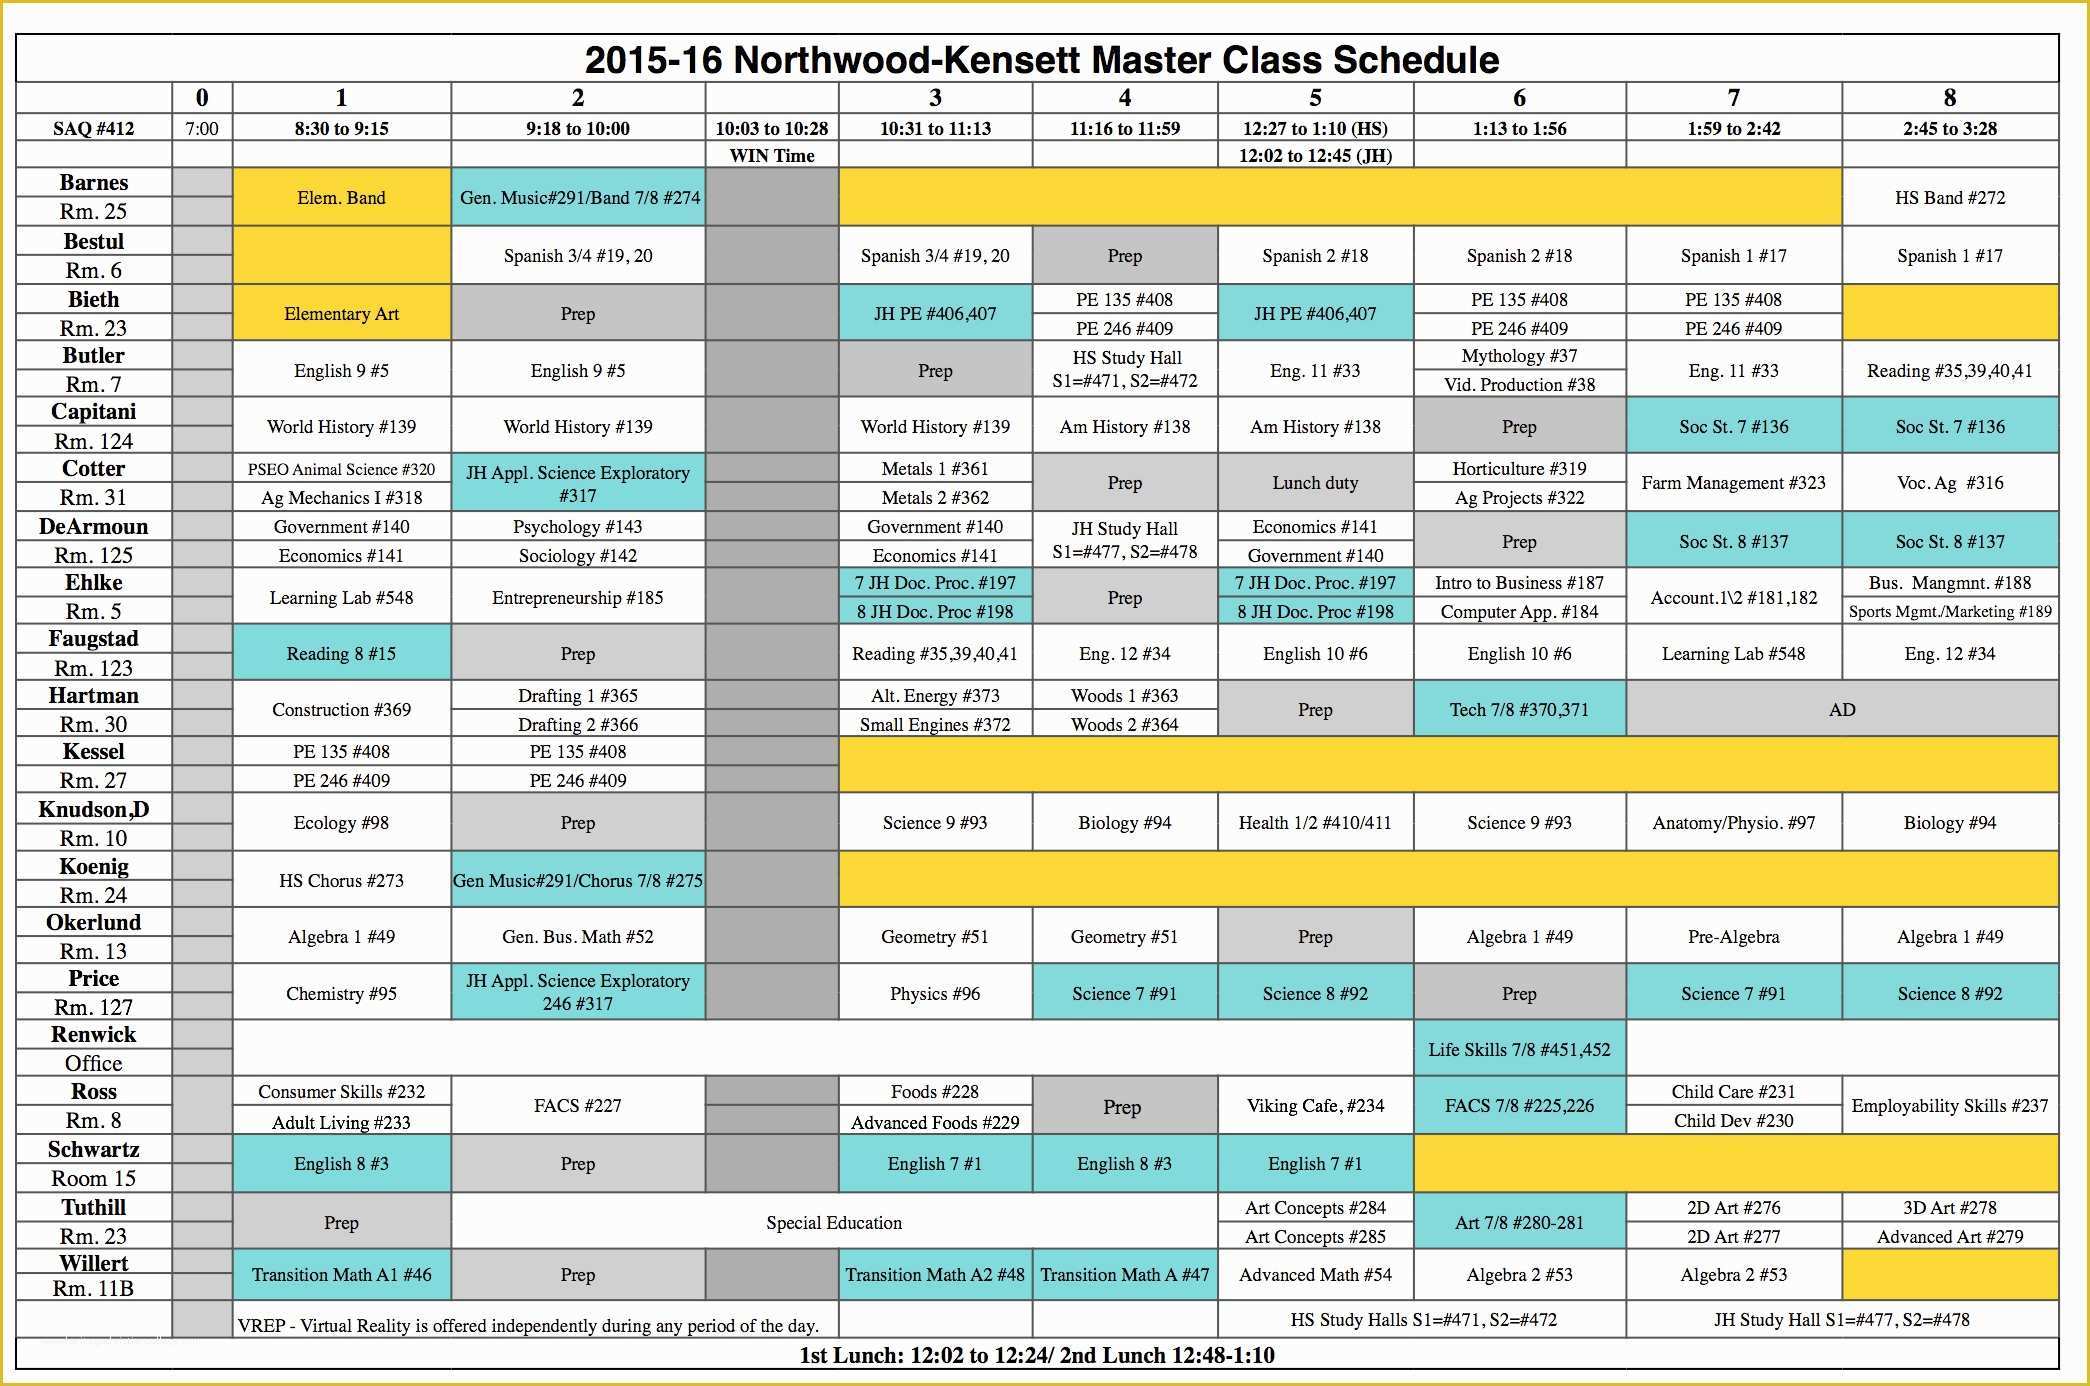 Free School Master Schedule Template Of northwood Kensett 2015 2016 High School Class Schedule